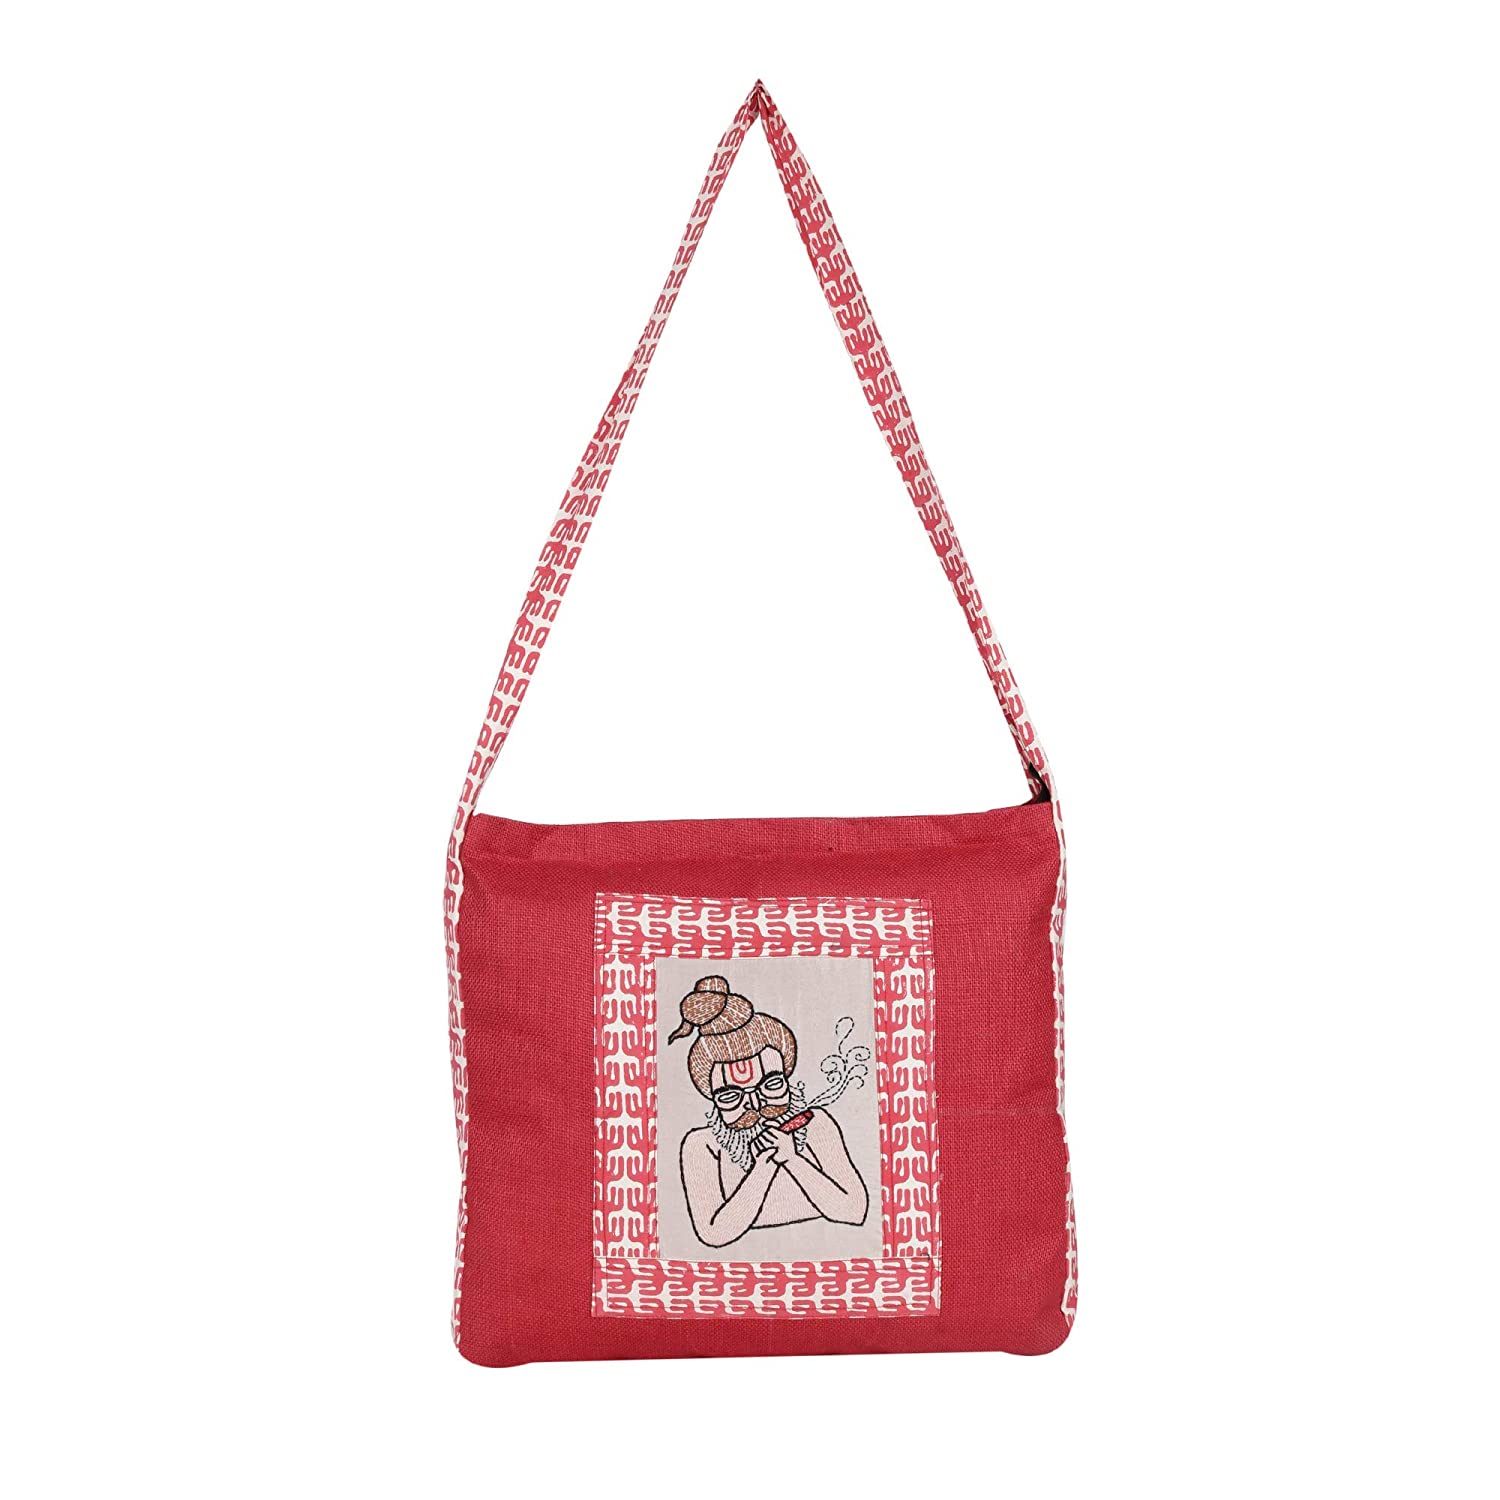 Velvet Thread work embroidery Tot bag